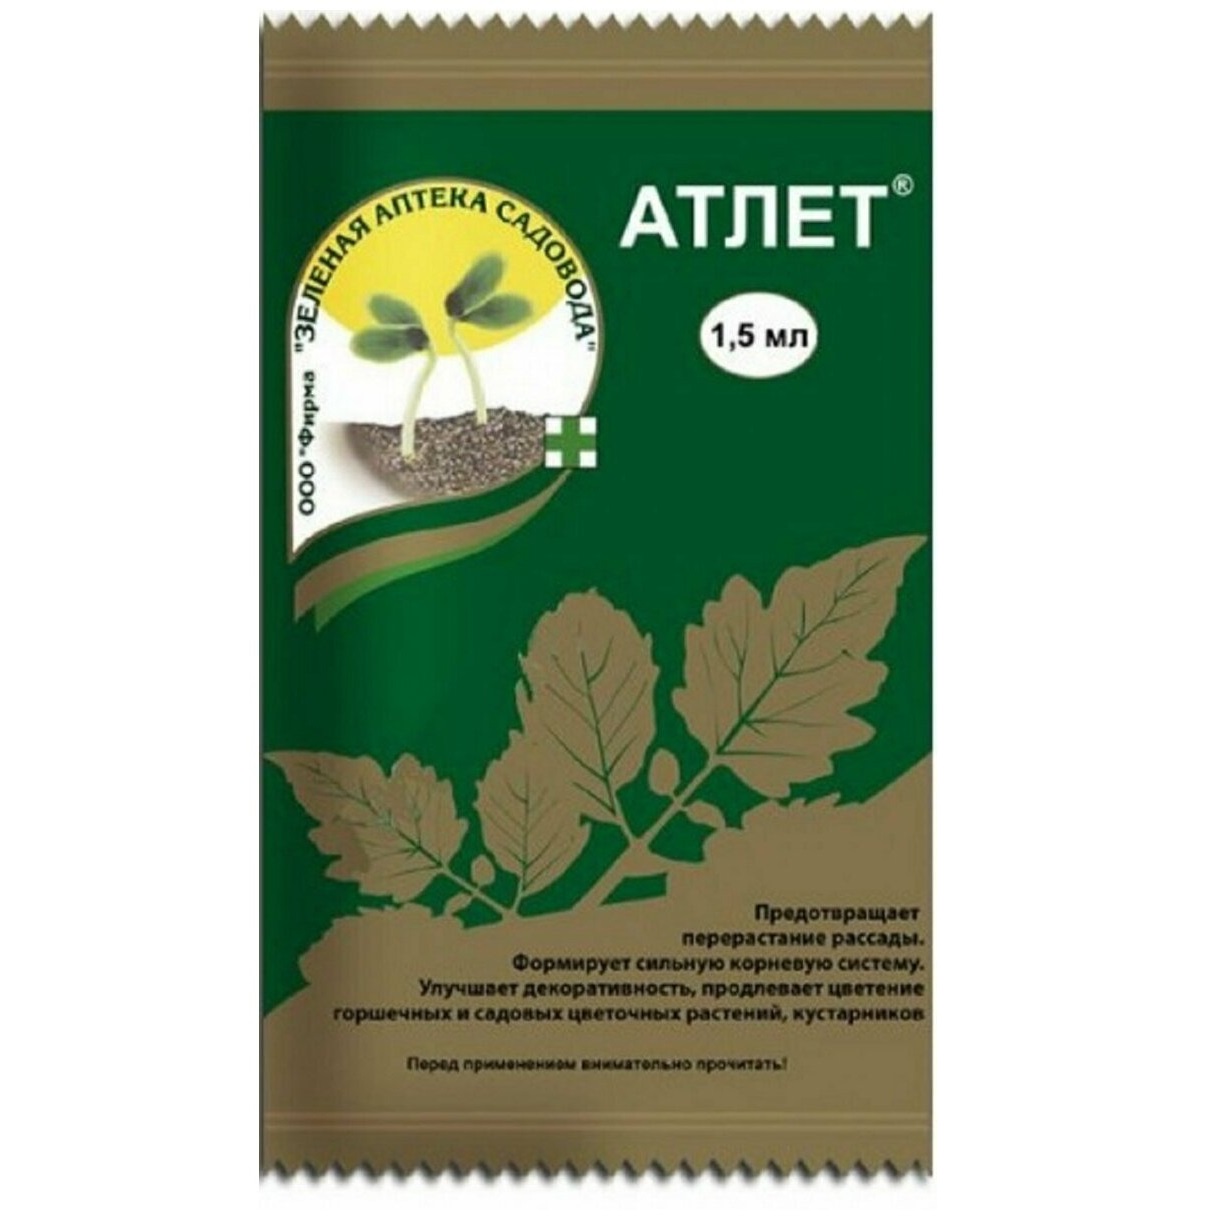 Зеленая аптека садовода Атлет 1.5 мл томат атлет f1